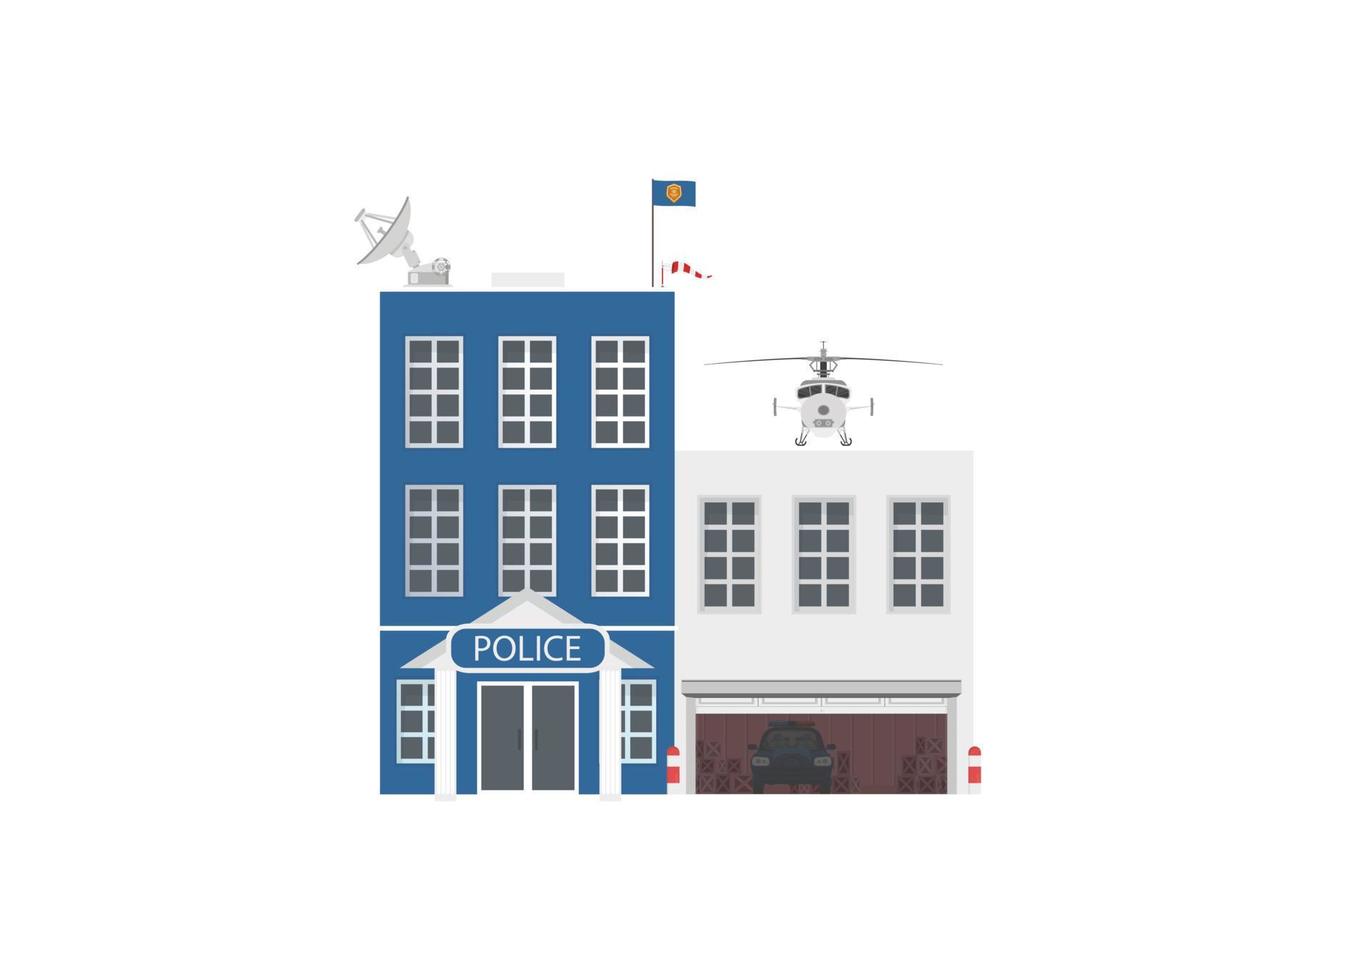 jeu d'icônes vectorielles ou éléments infographiques représentant des bâtiments de police low poly pour l'illustration de la ville vecteur